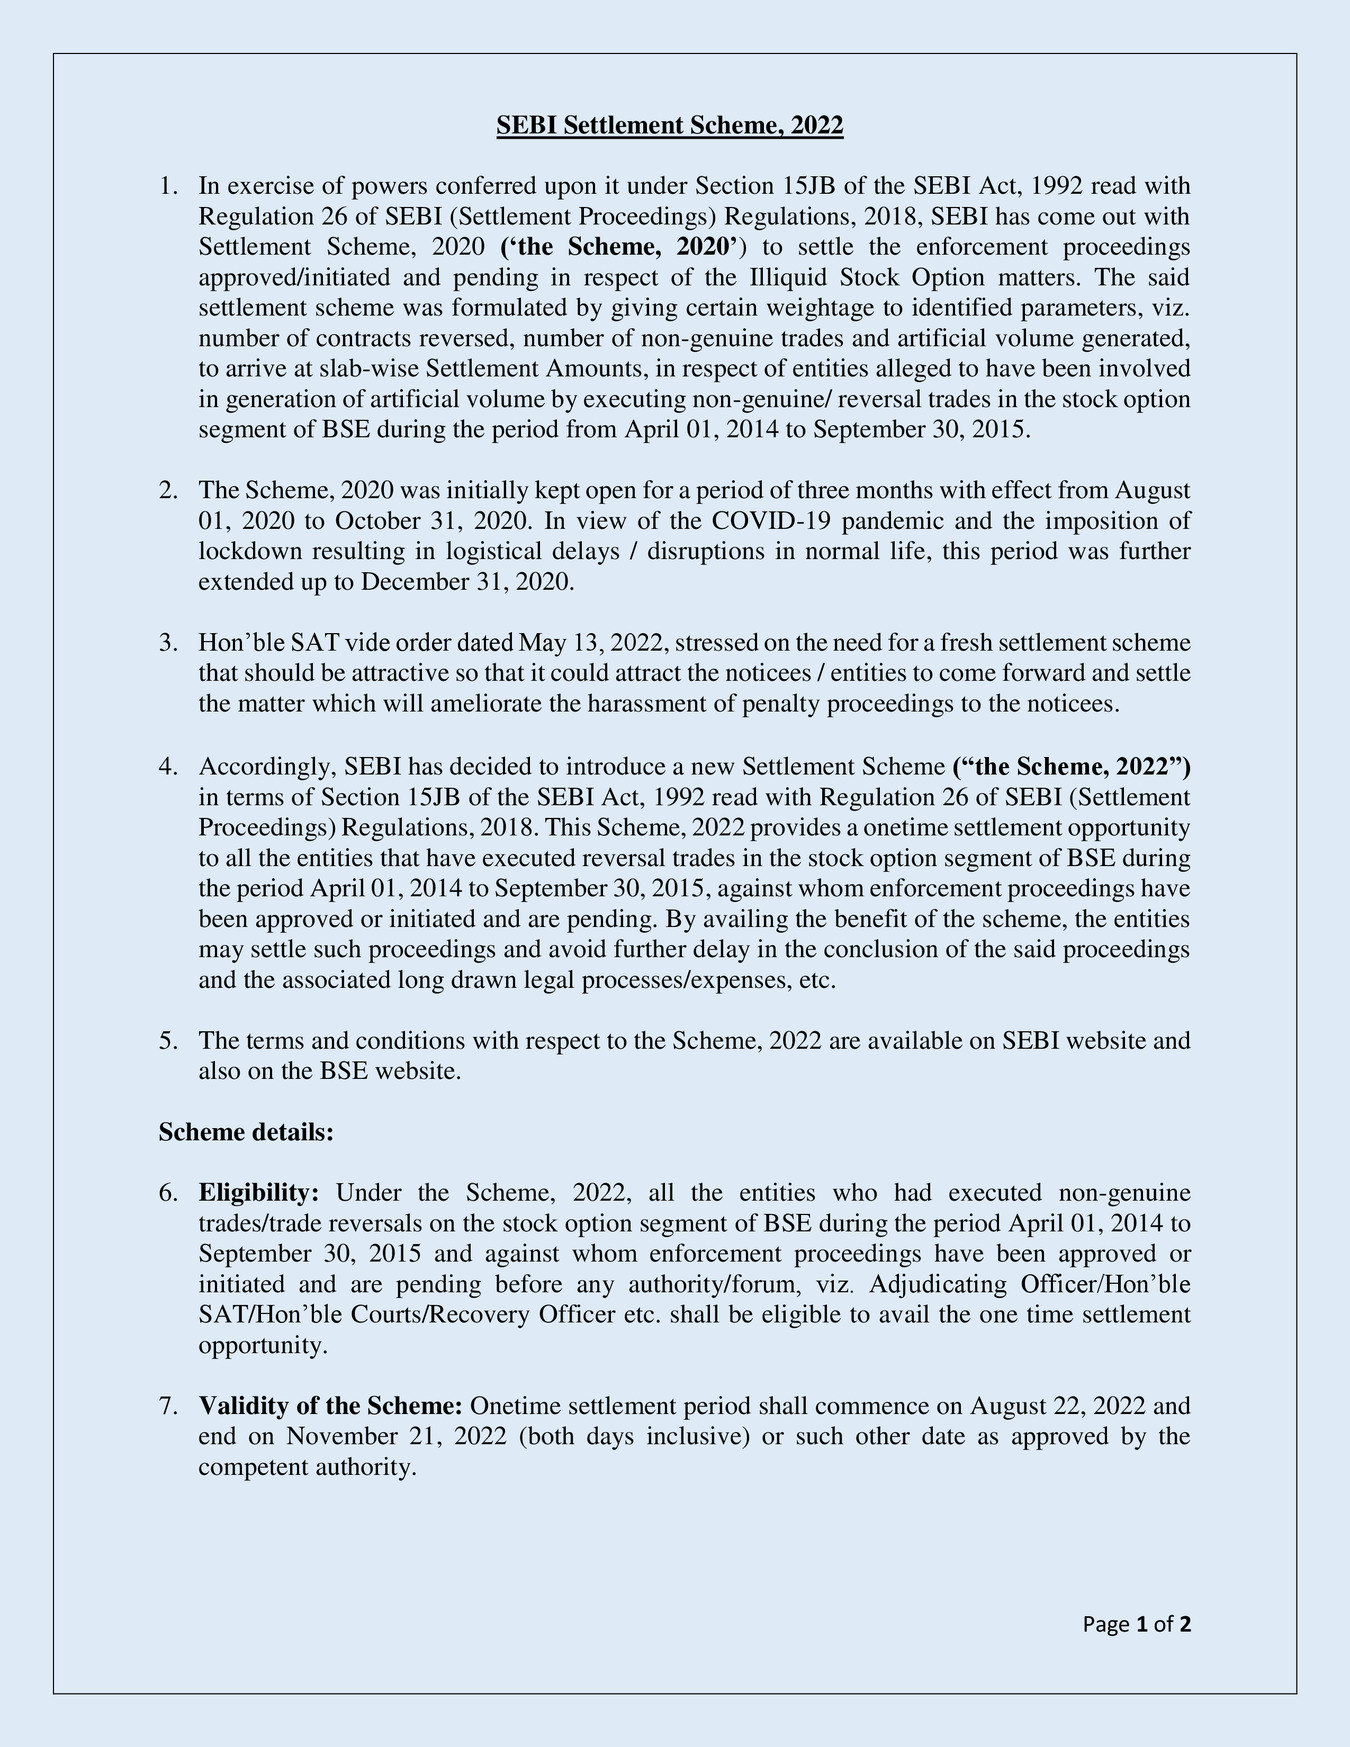 SEBI Settlement Scheme 2023 Guidelines PDF